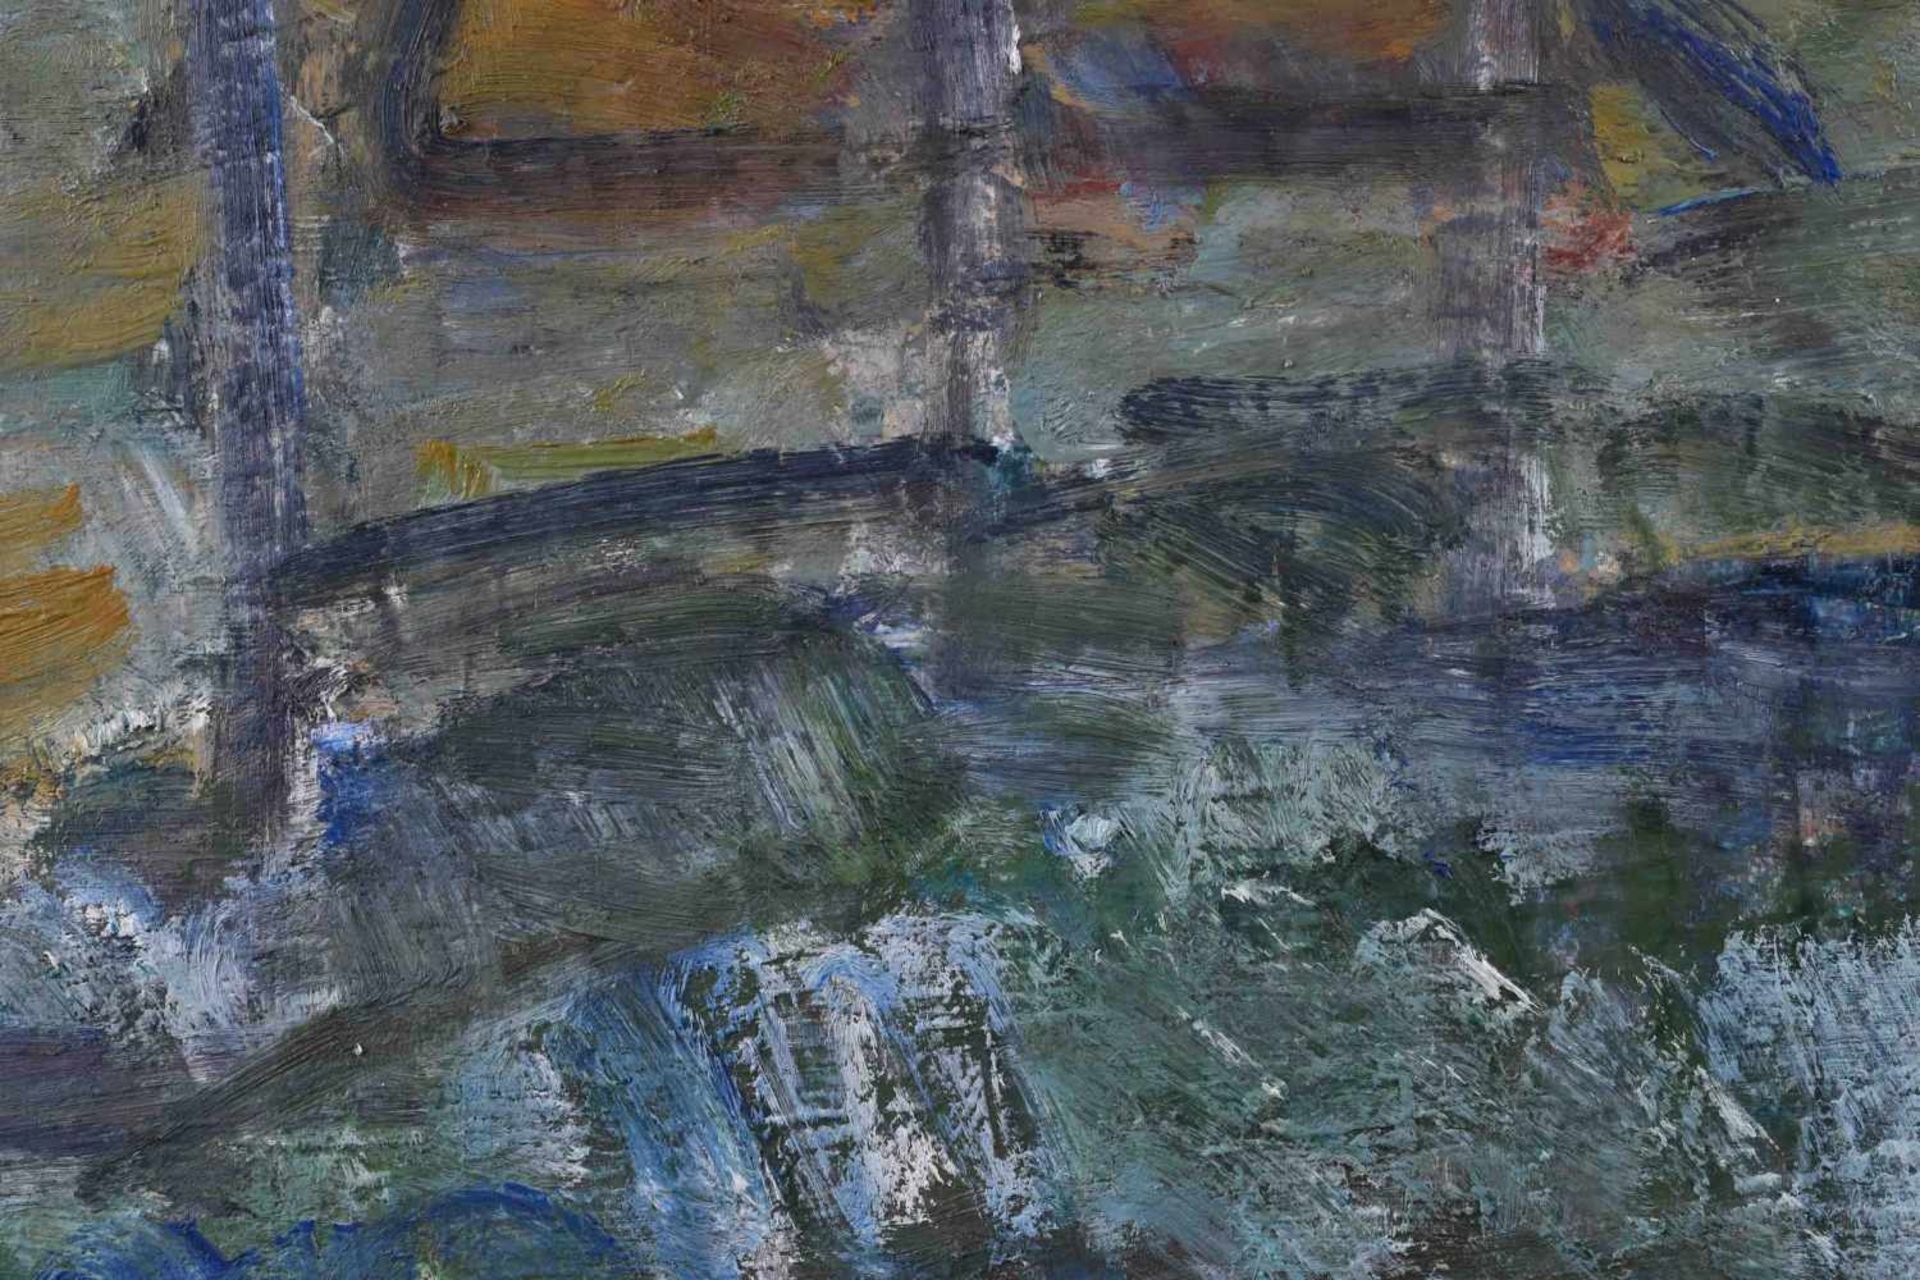 Manfred Richard BÖTTCHER (1933-2001)"Alter Bersarinplatz- Berlin"painting oil / canvas, 41 cm x 70.5 - Bild 5 aus 7